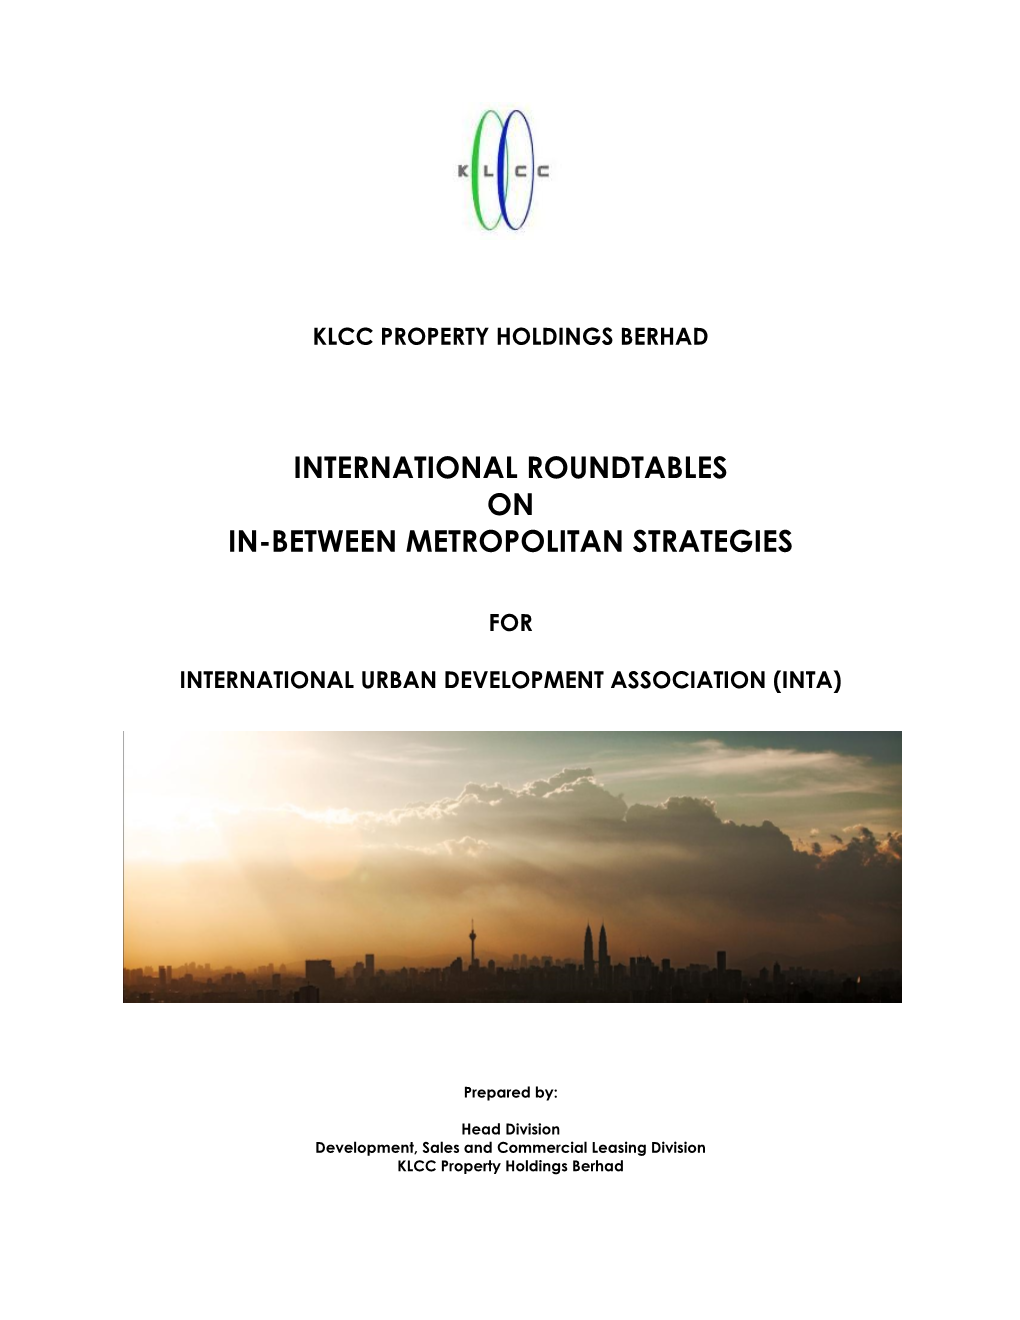 International Roundtables on In-Between Metropolitan Strategies